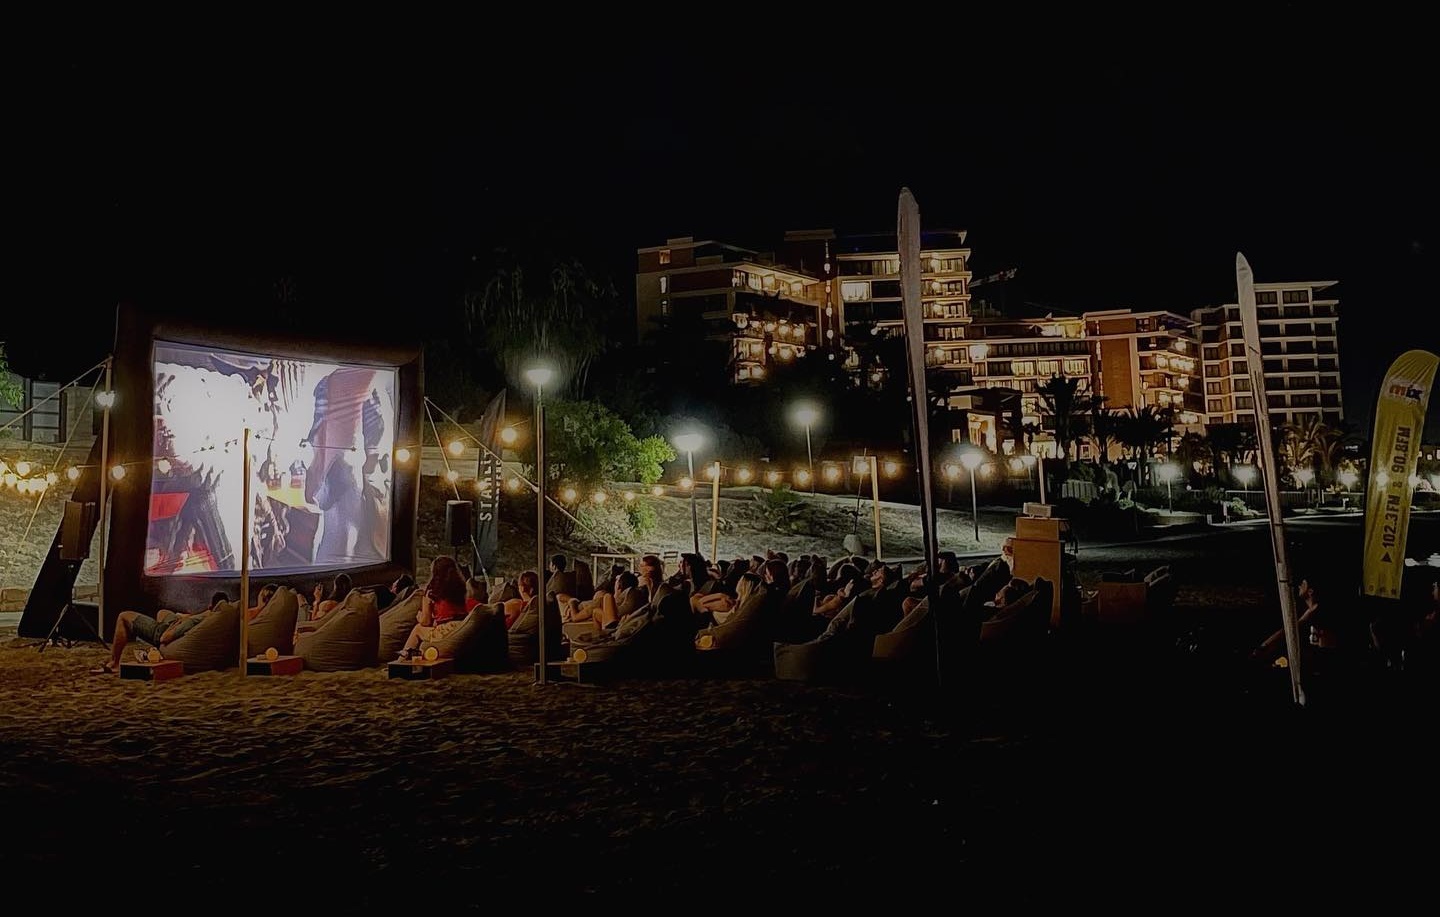 Το πρώτο παραθαλάσσιο θερινό σινεμά έρχεται στη Λάρνακα για 3 μαγικές βραδιές